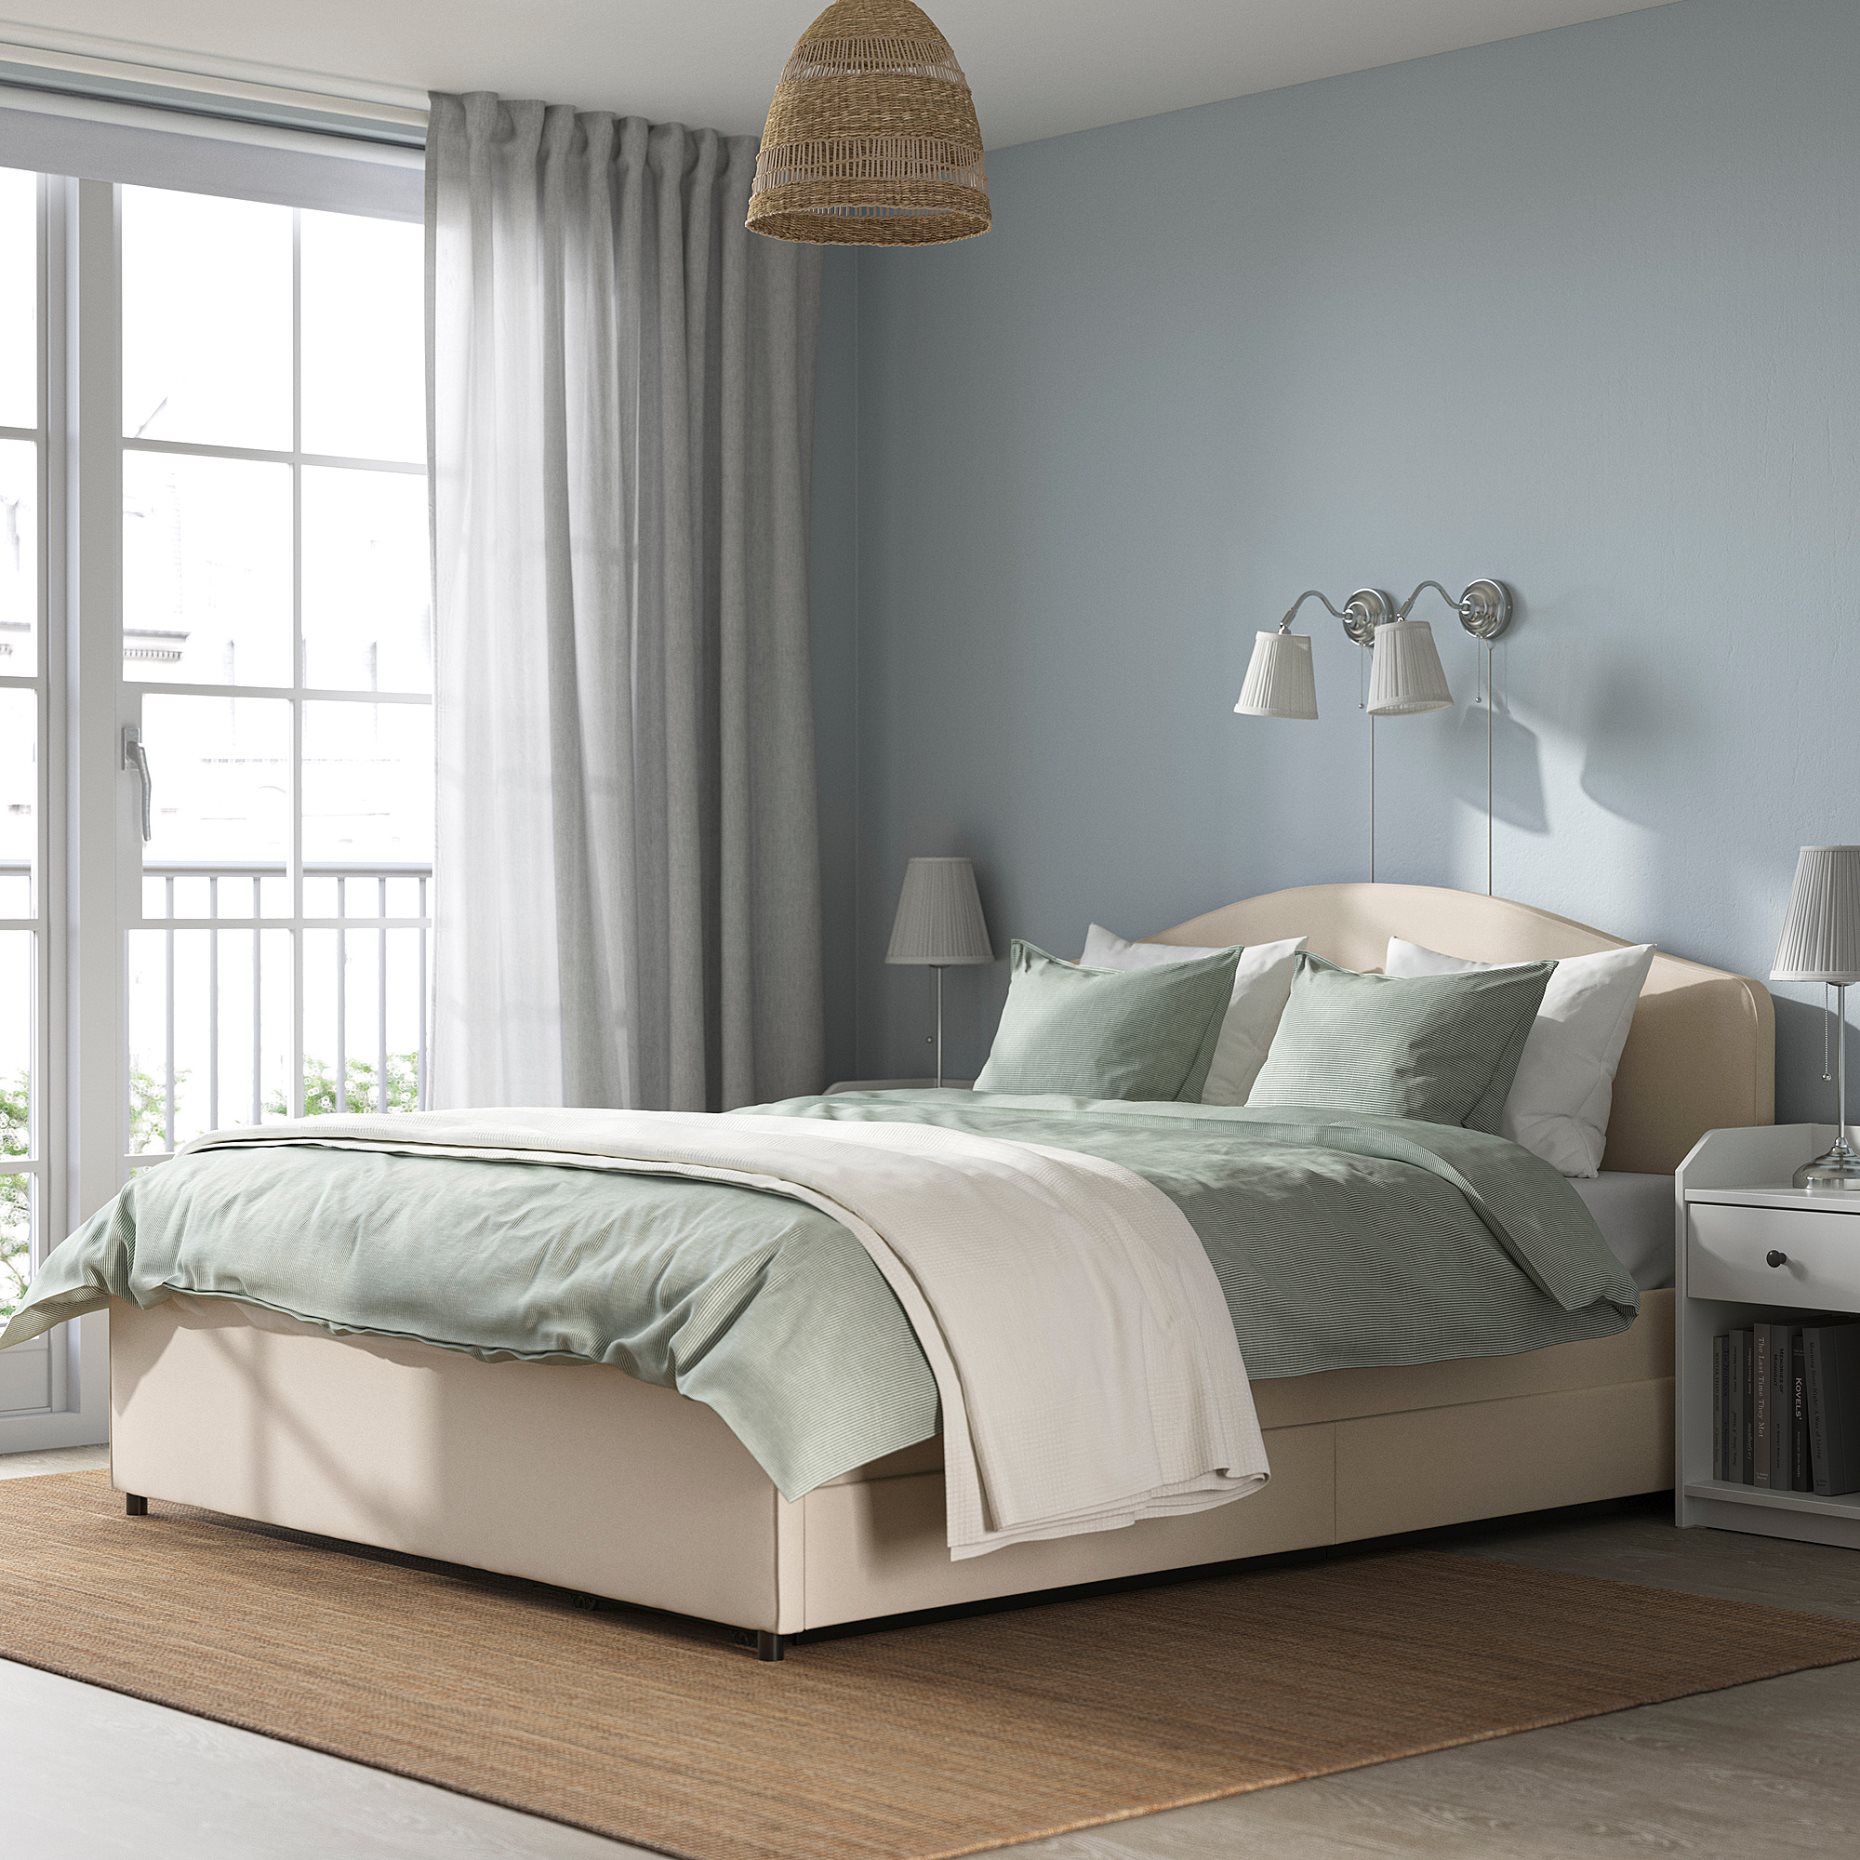 HAUGA, bedroom furniture/set of 4, 140x200 cm, 694.860.61